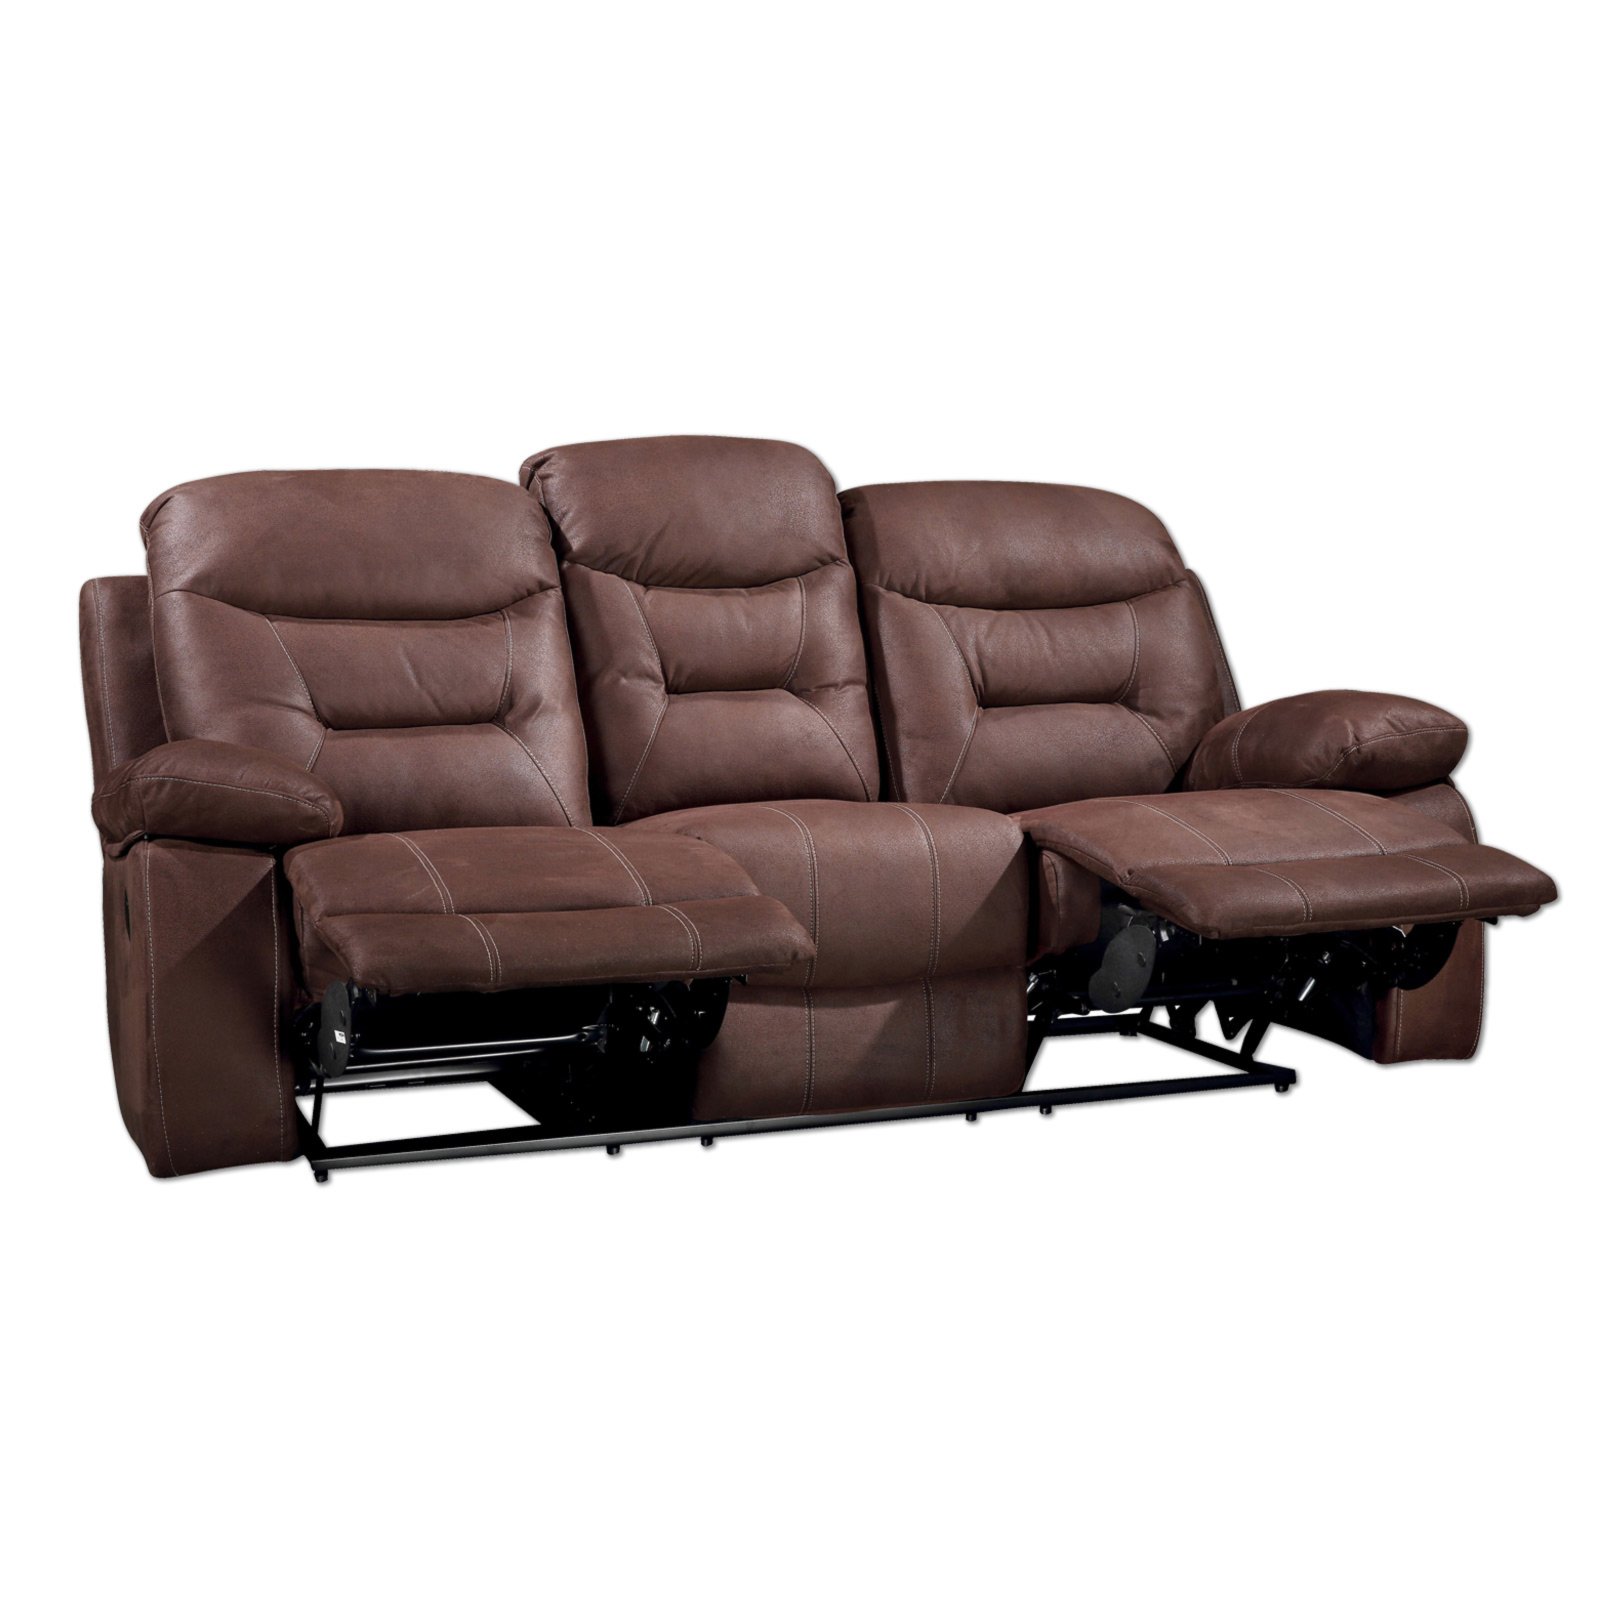 3-sitzer-sofa - dunkelbraun - relaxfunktion